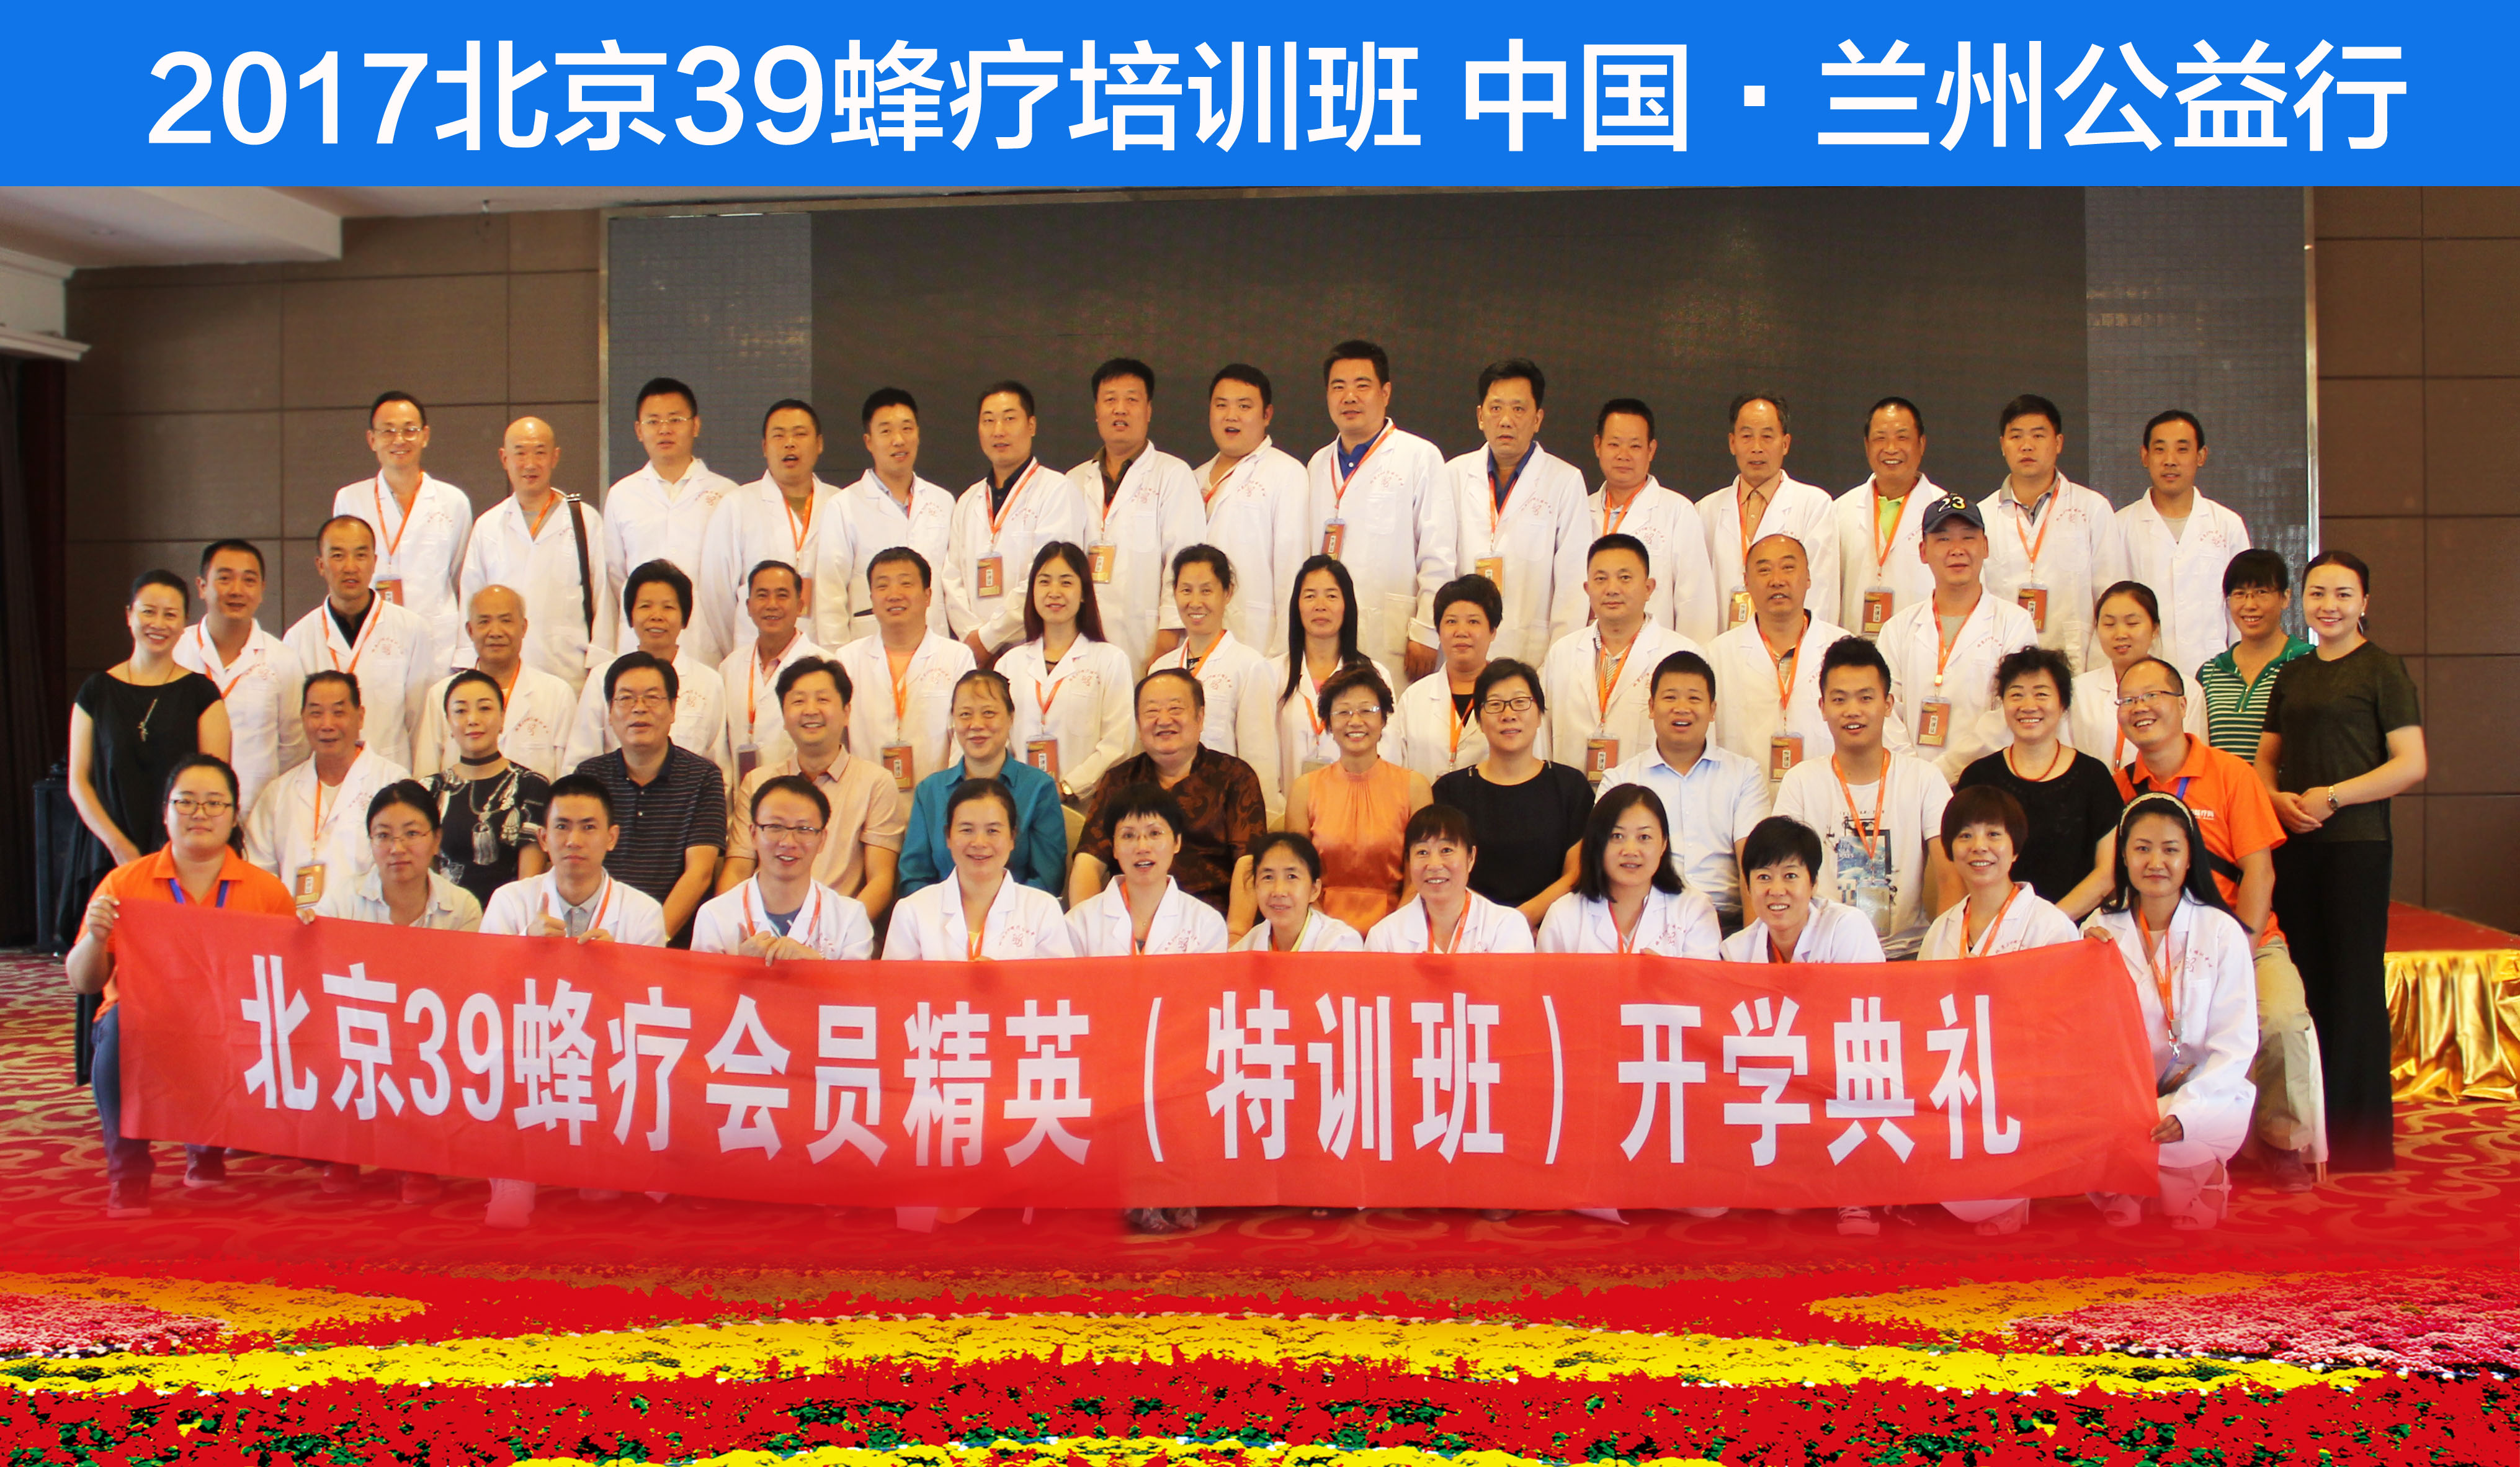 2017北京39蜂疗培训班 中国·兰州公益行